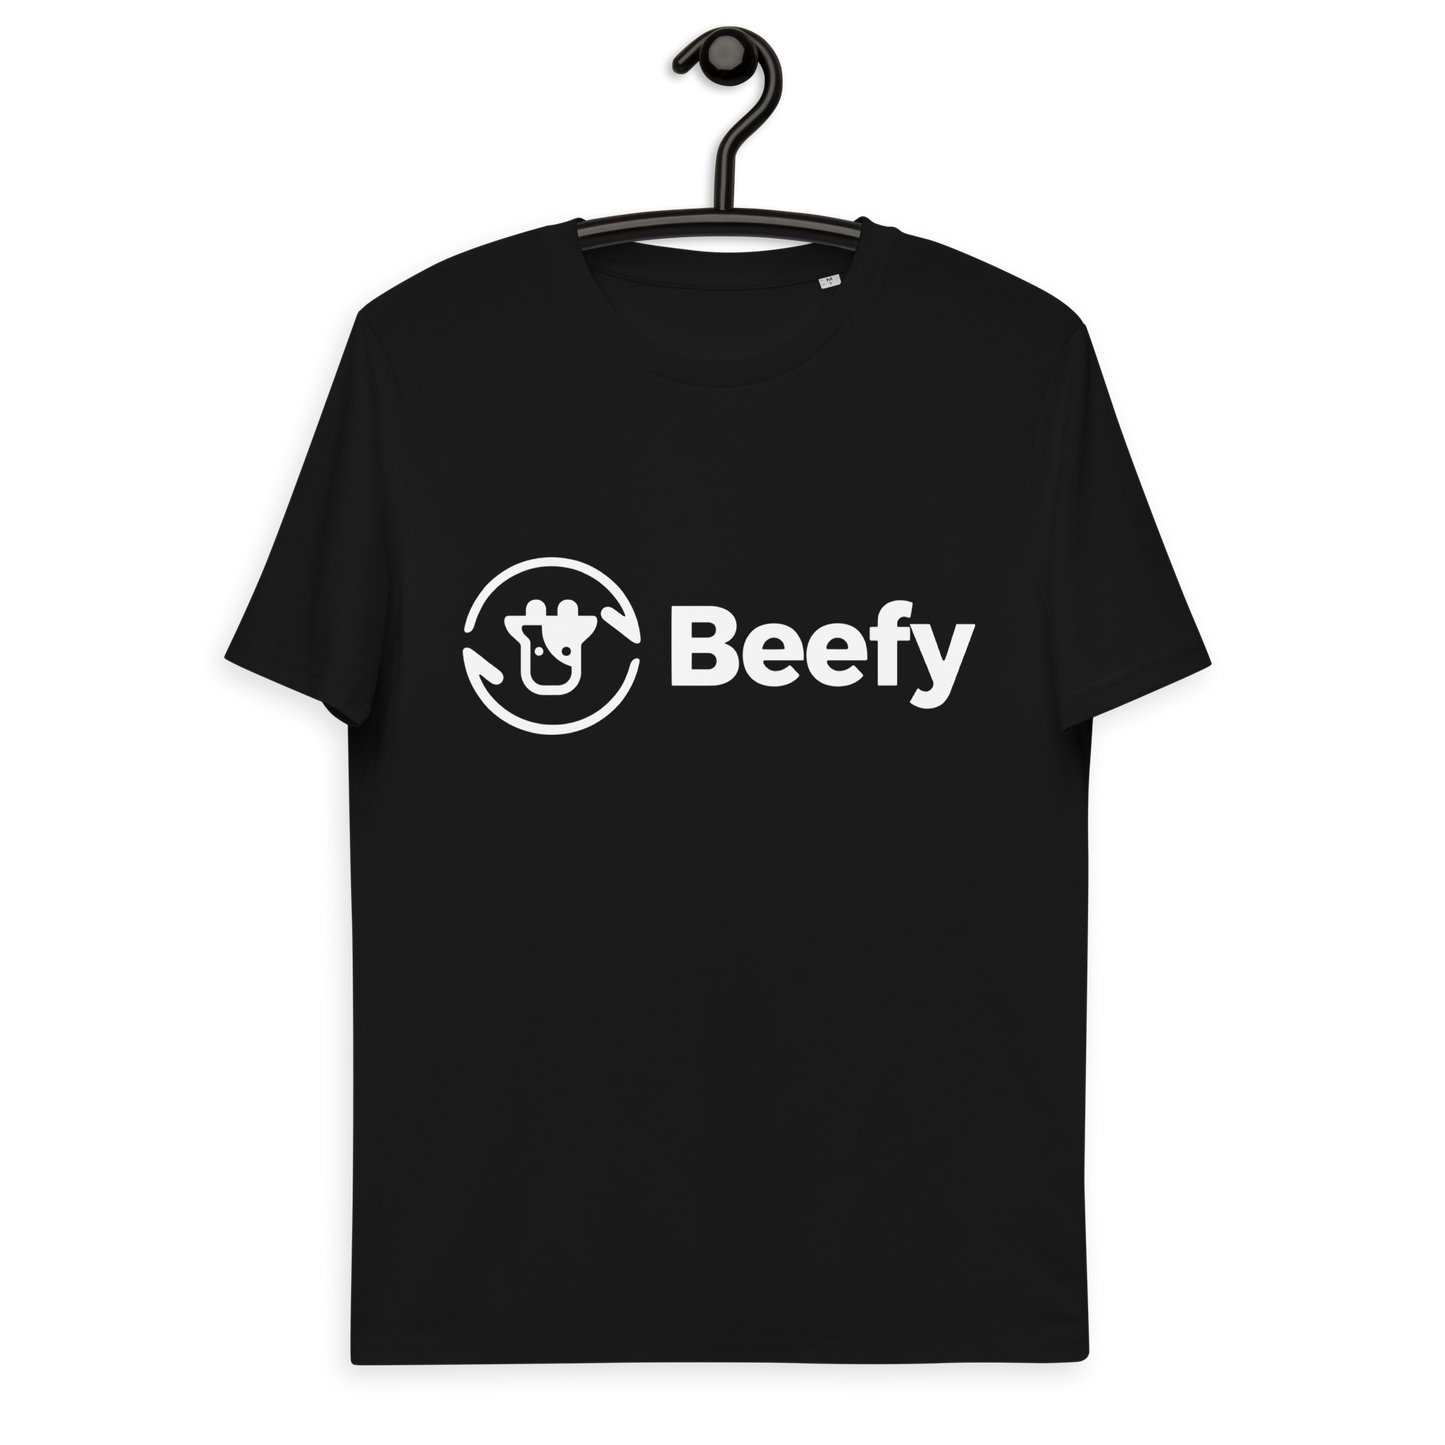 Basic black Beefy tee